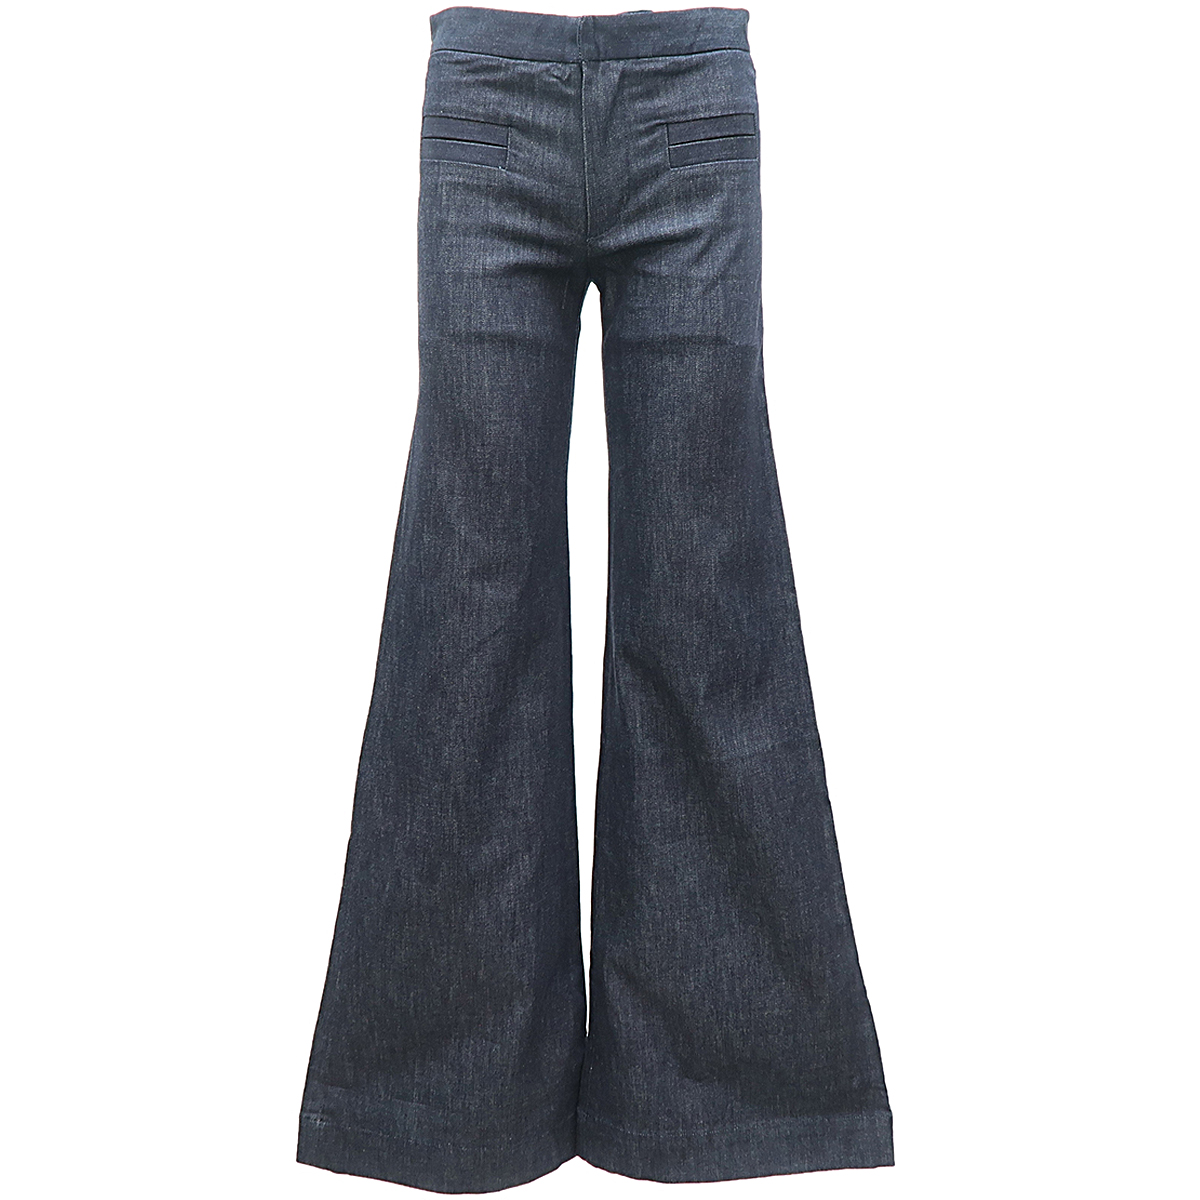 CHLOE / Super Flared Jeans